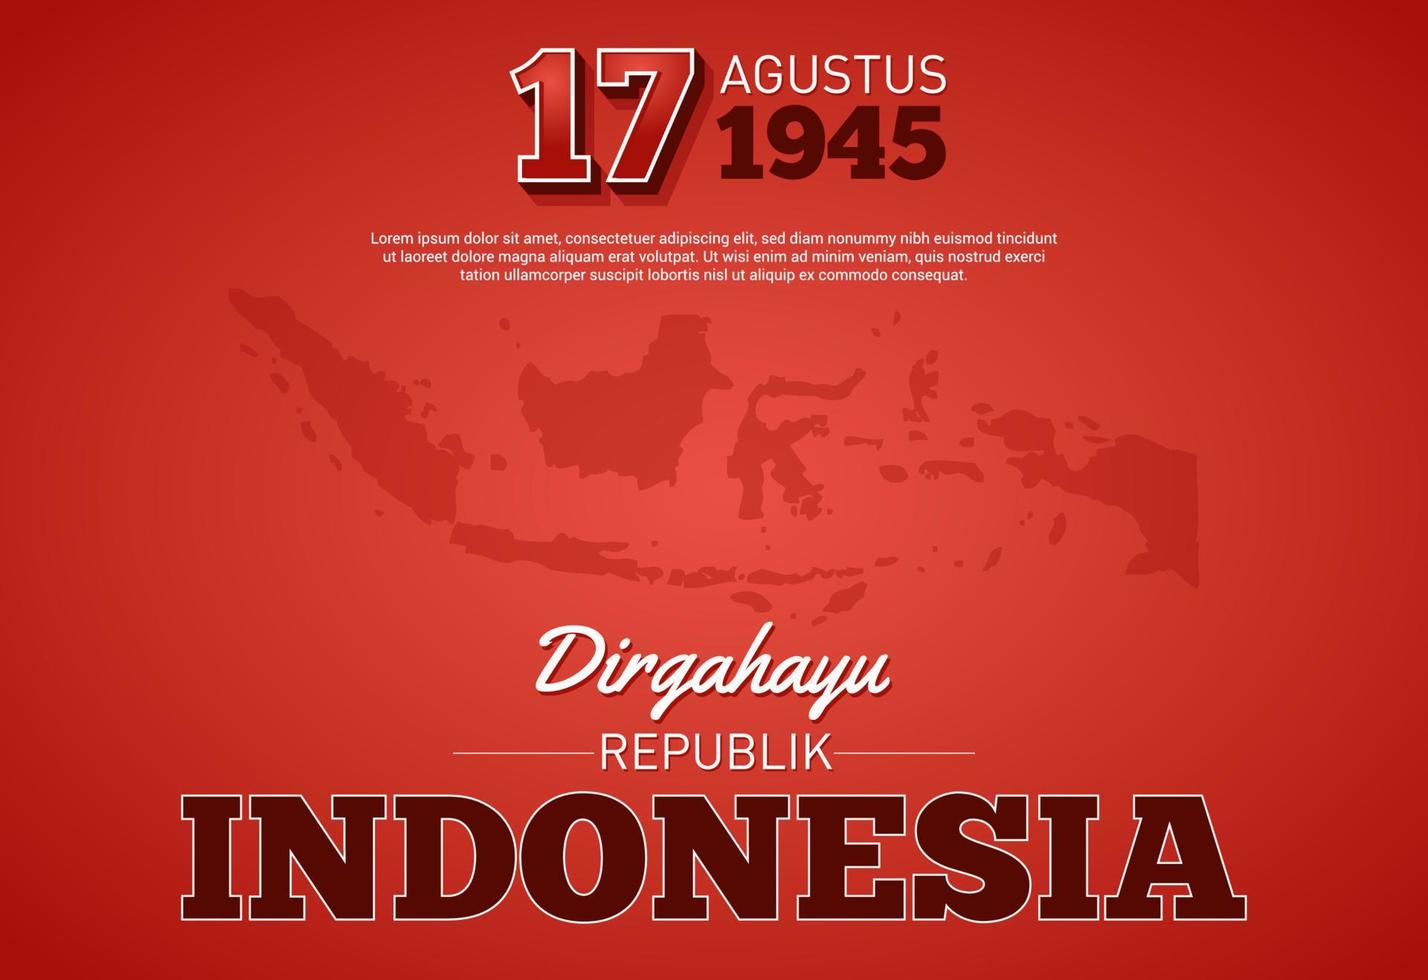 een illustratie van de Indonesische archipel met de inscriptie ter ere van de onafhankelijkheidsdag van Indonesië op 17 augustus 1945 vector